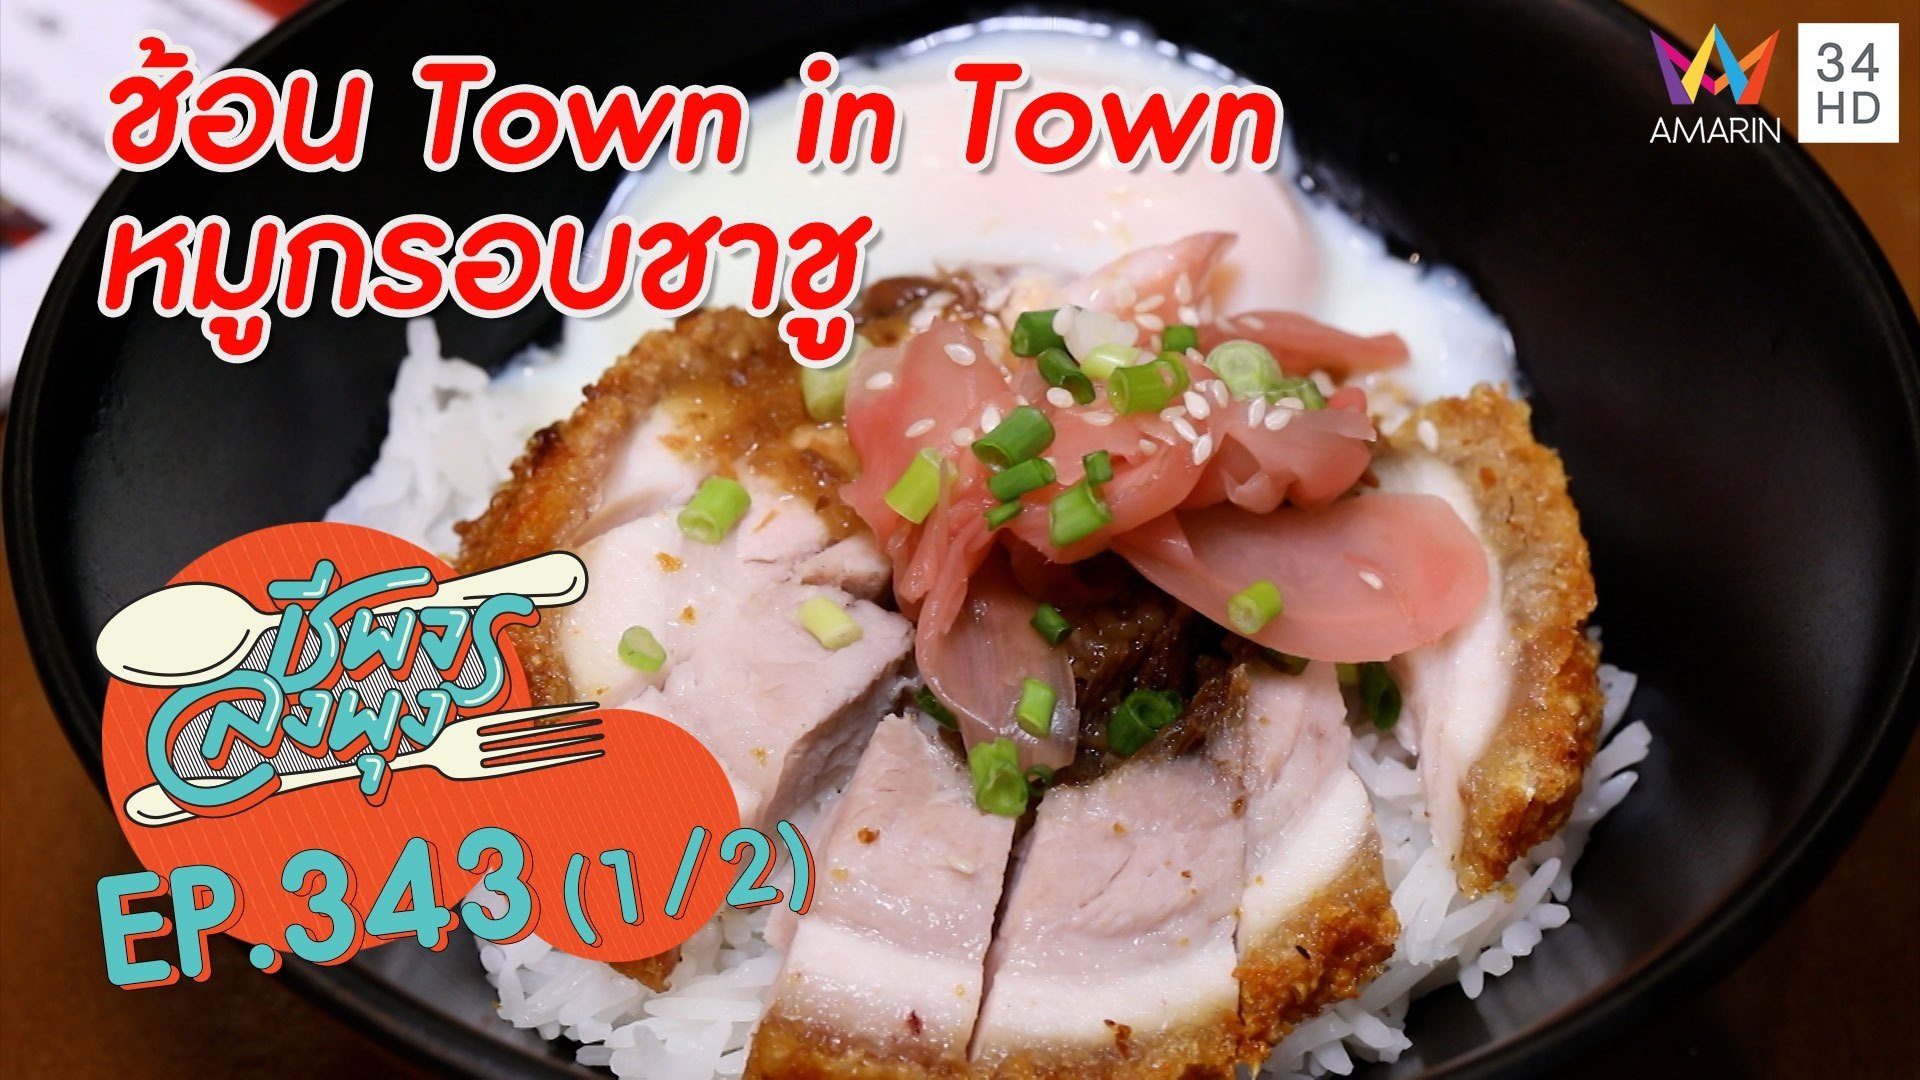 หมูกรอบสไตล์ญี่ปุ่น @ ร้านช้อน Town in Town หมูกรอบชาชู | ชีพจรลงพุง | 20 พ.ย. 64 (1/2) | AMARIN TVHD34